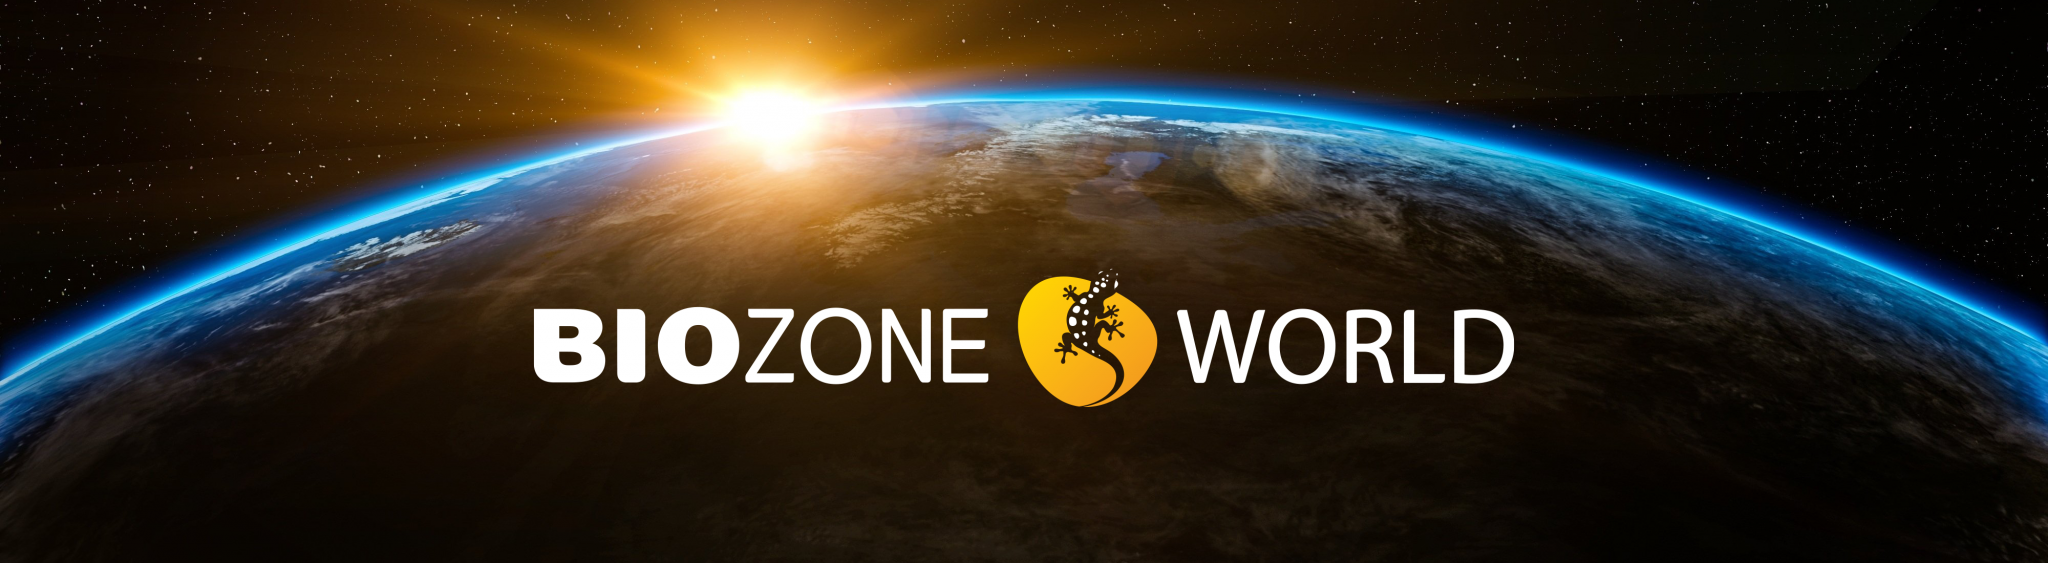 Biozone World logo